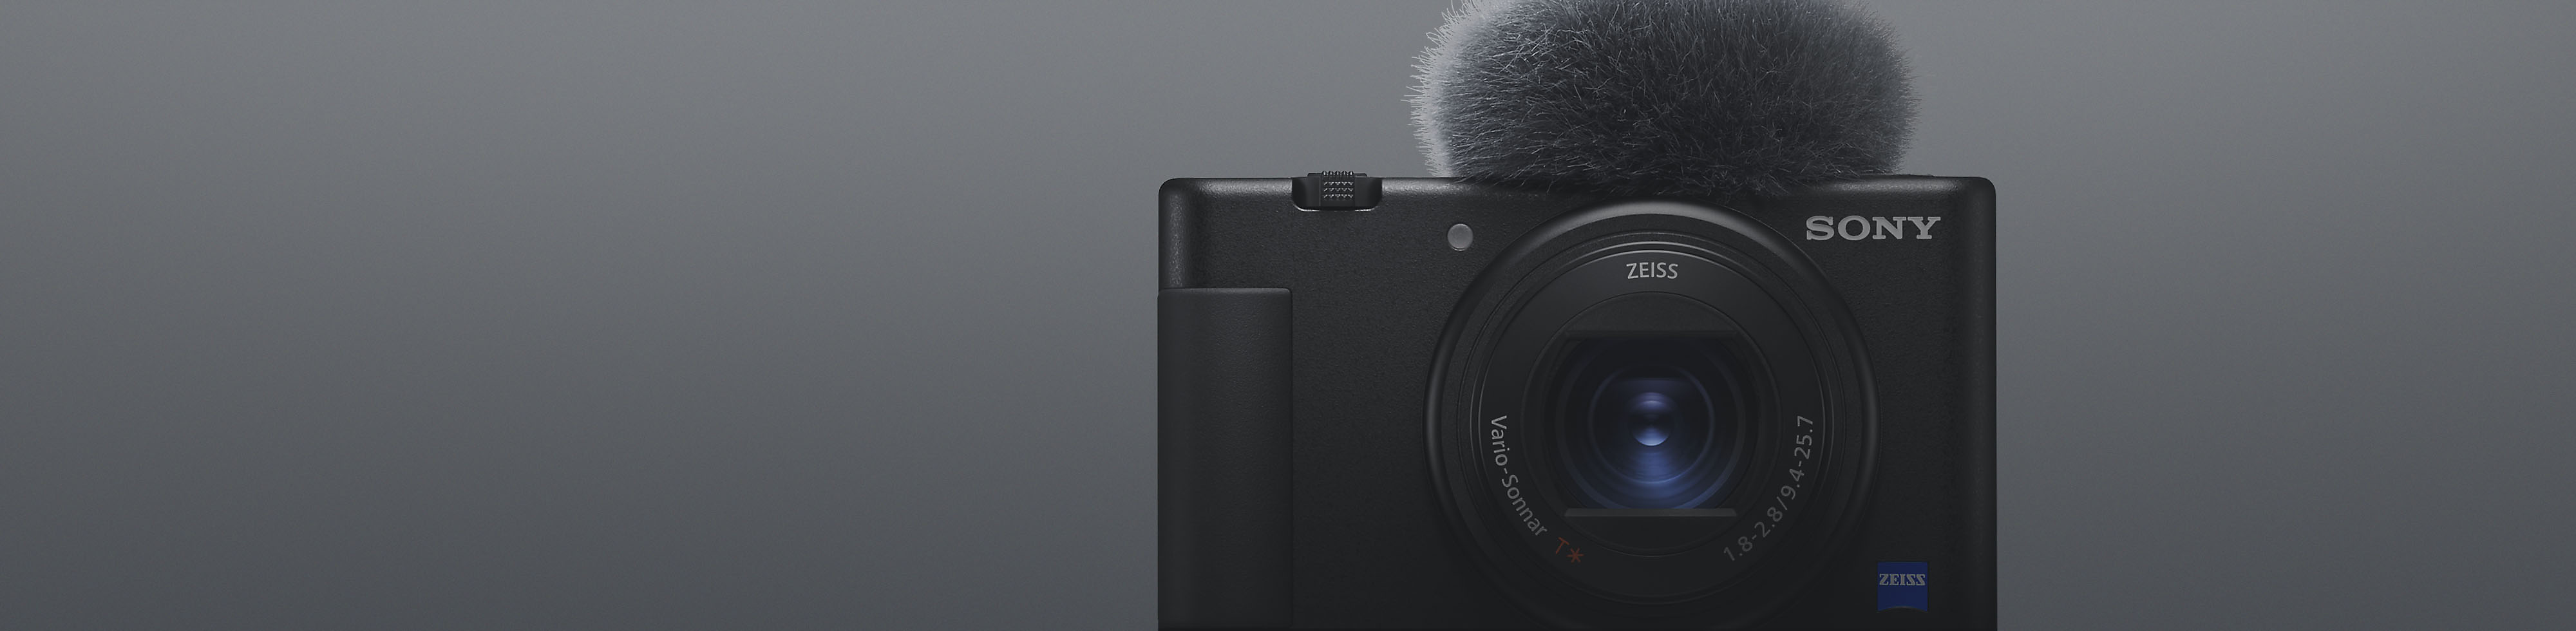 Mặt trước của máy ảnh nhỏ gọn Sony màu đen có gắn micro